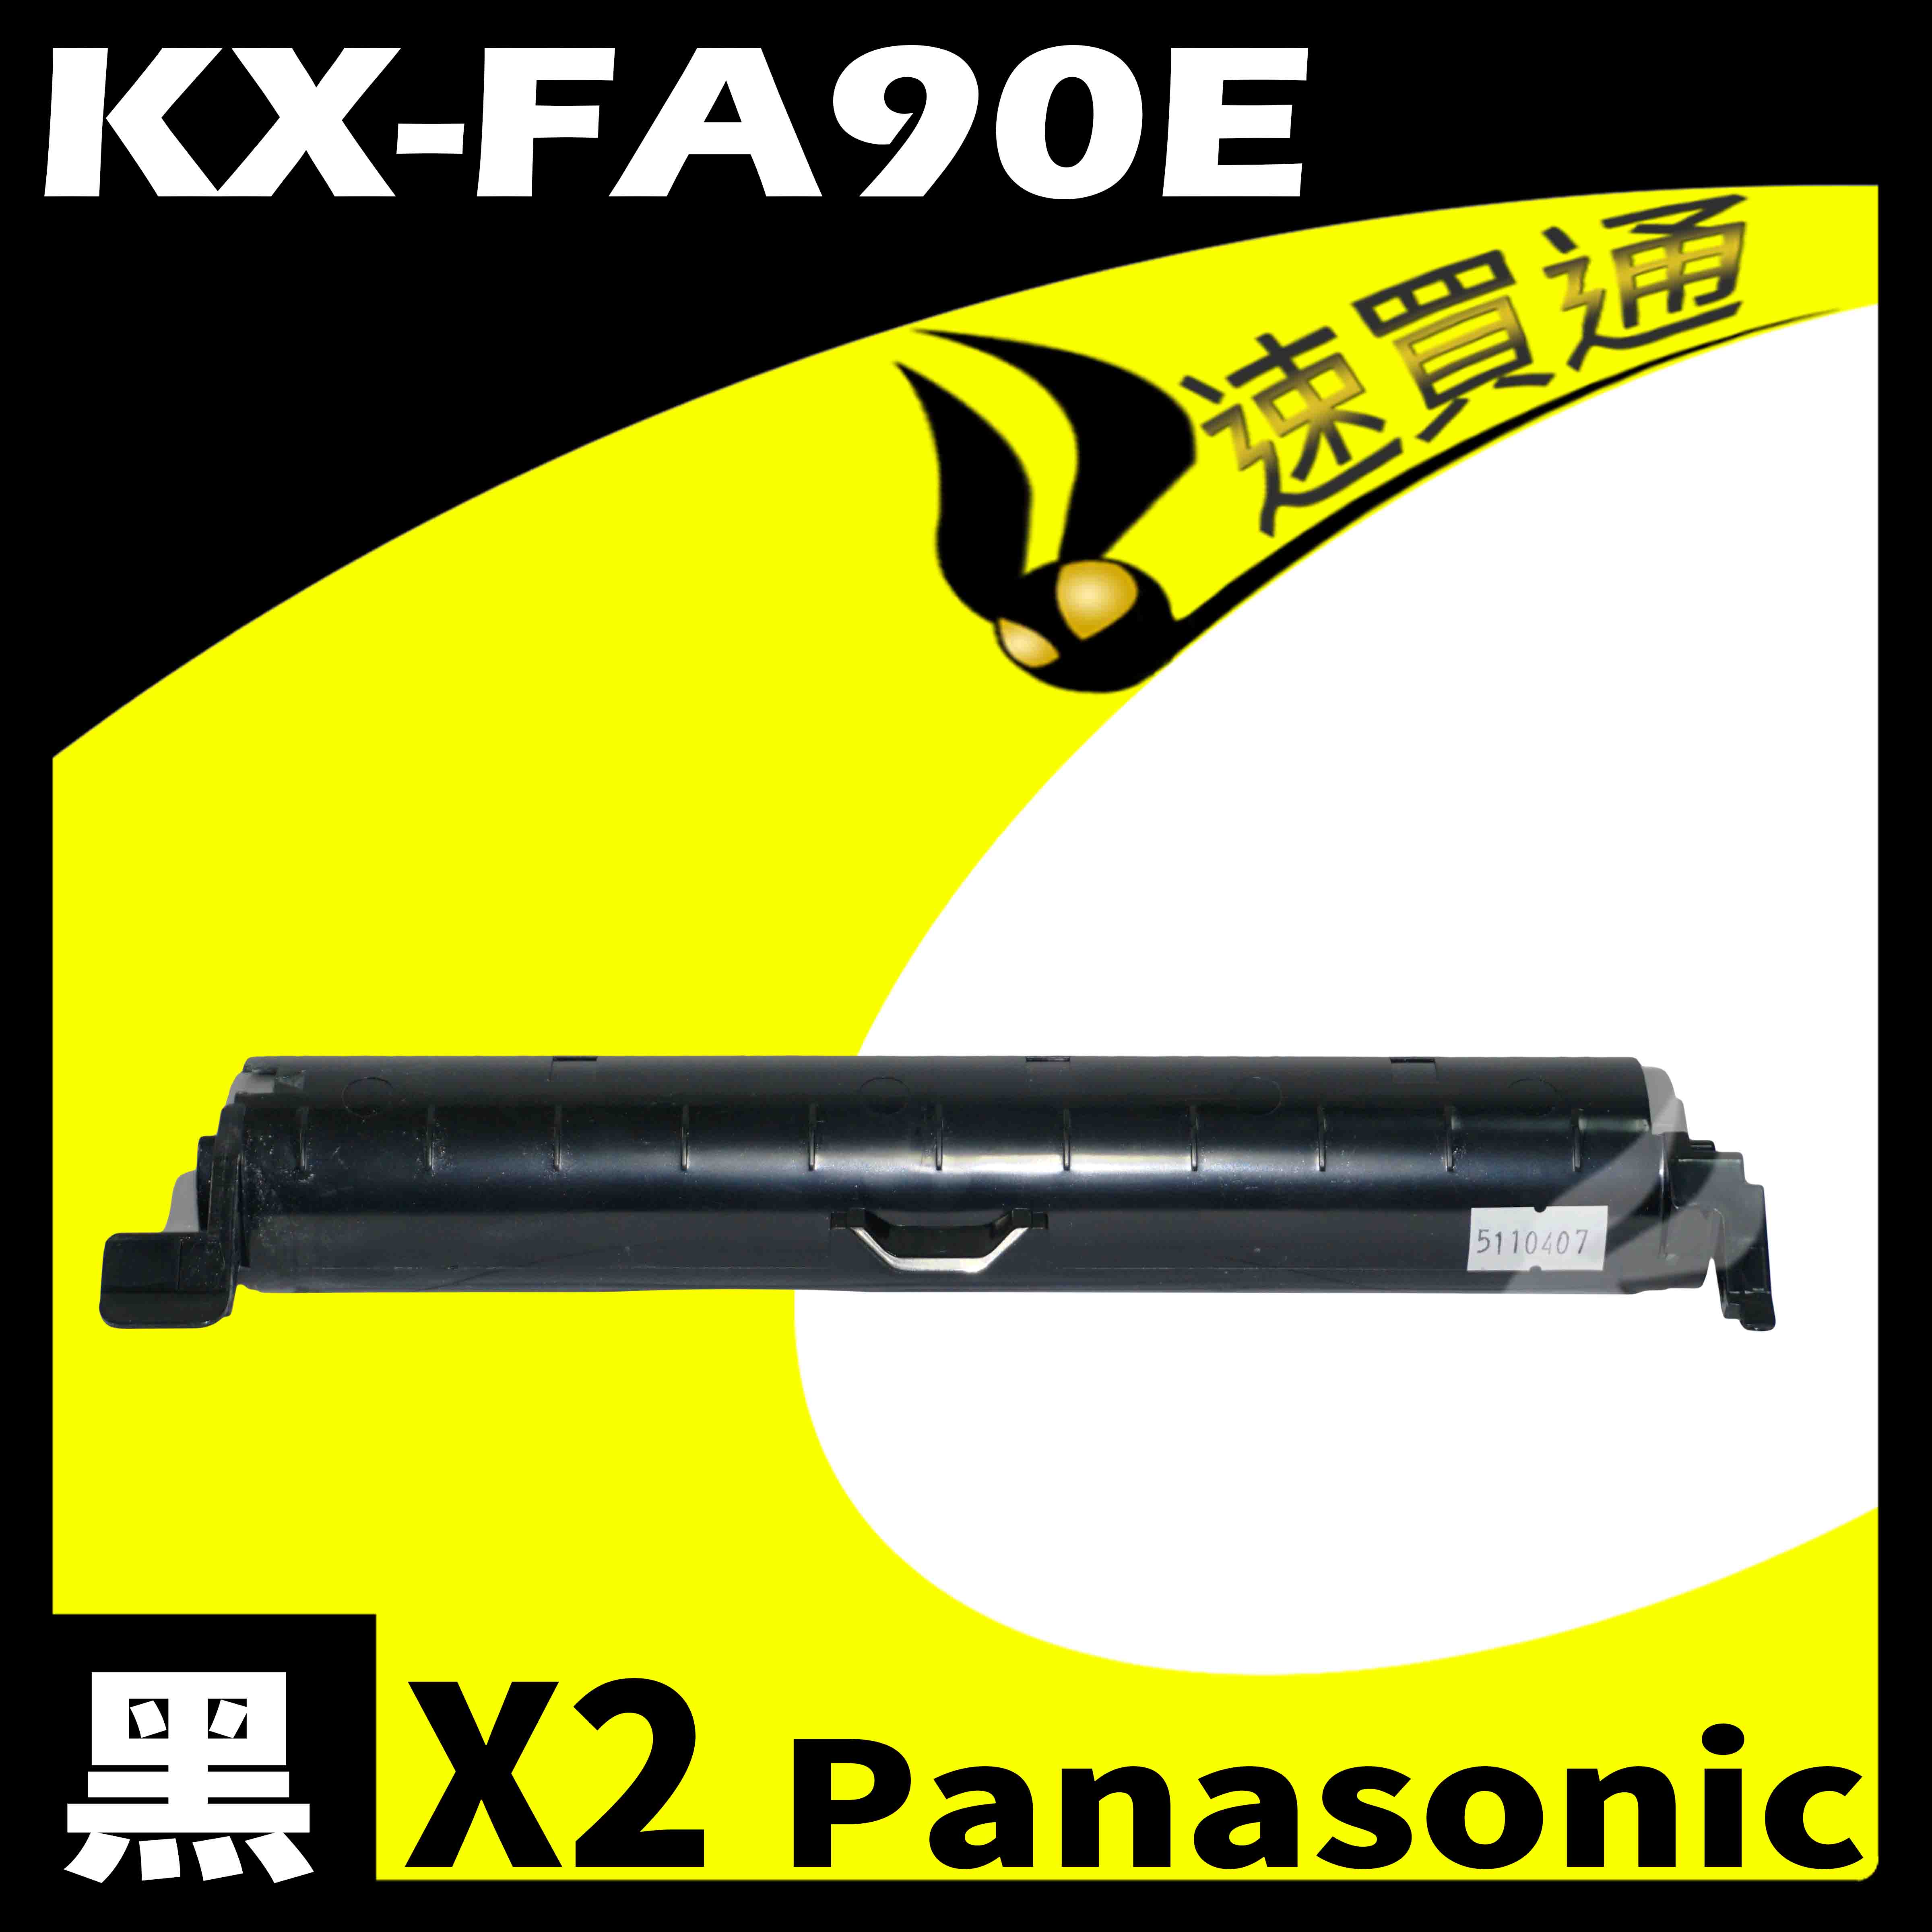 【速買通】超值2件組 Panasonic KX-FA90E 相容碳粉匣